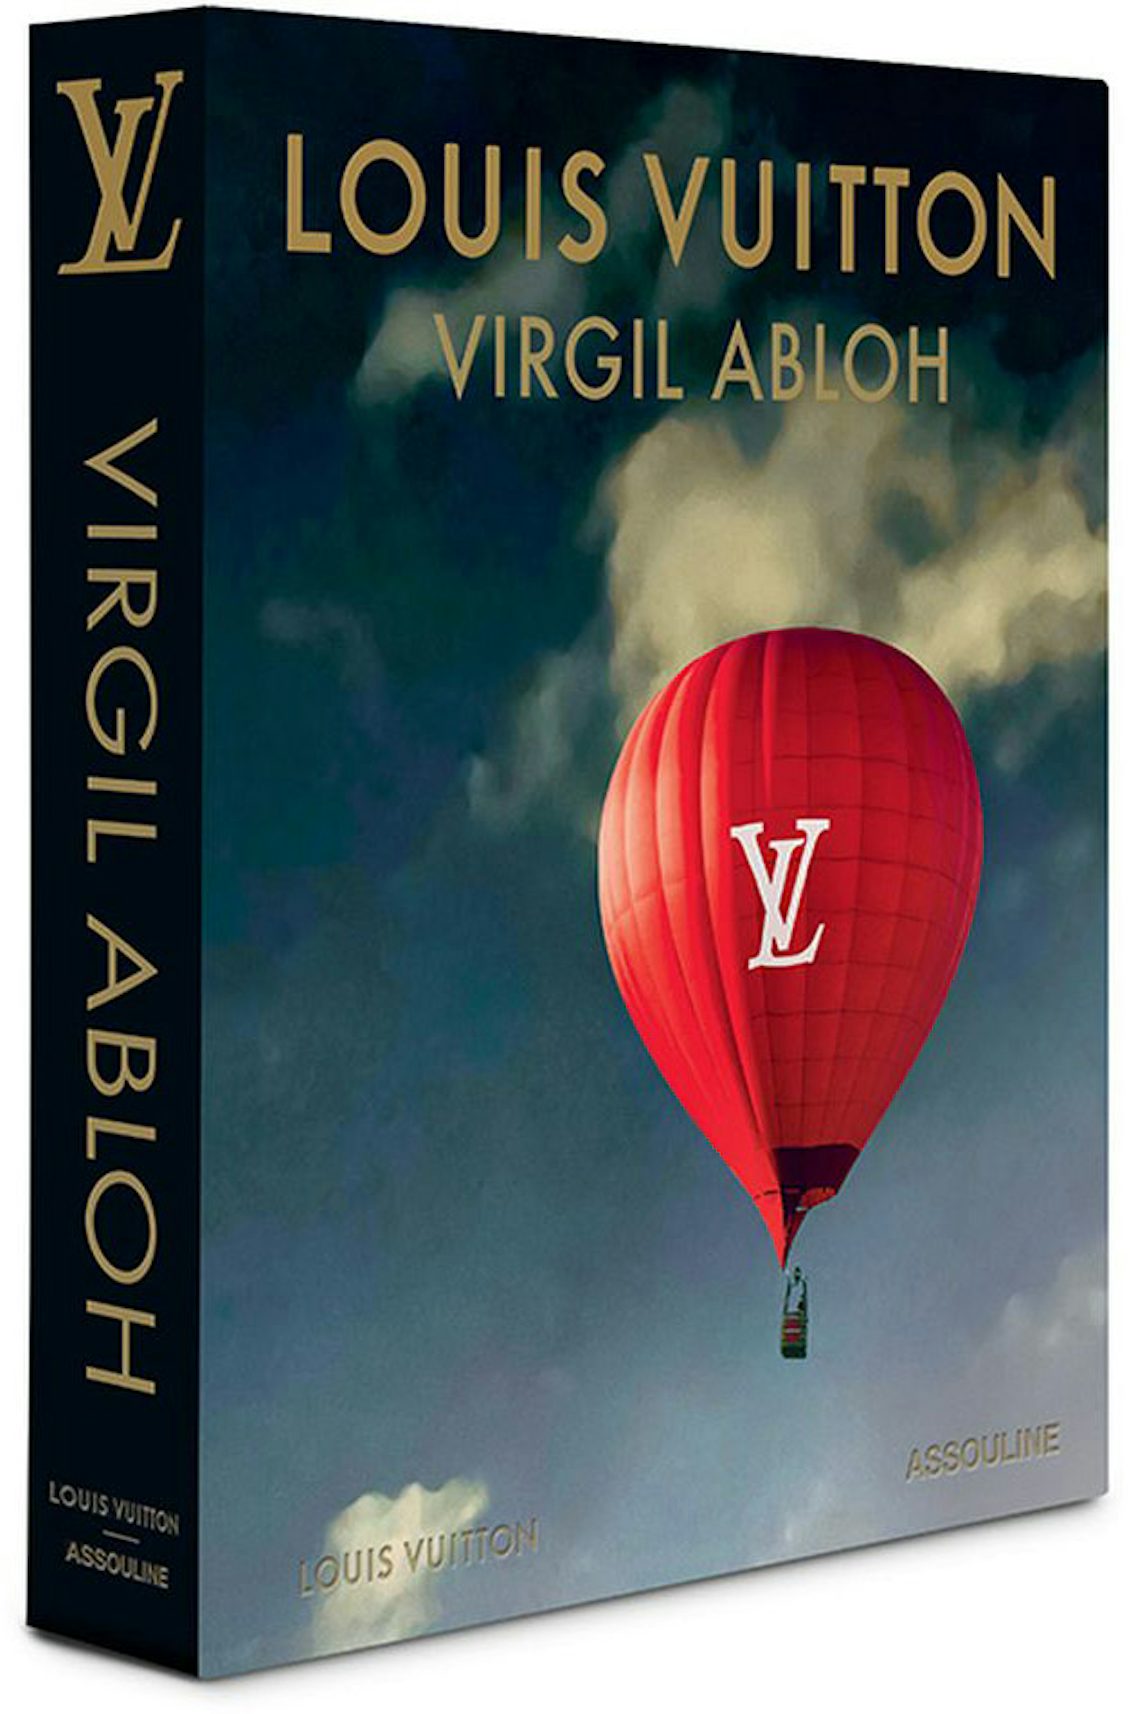 Assouline Louis Vuitton: Virgil Abloh, Classic Cartoon Cover